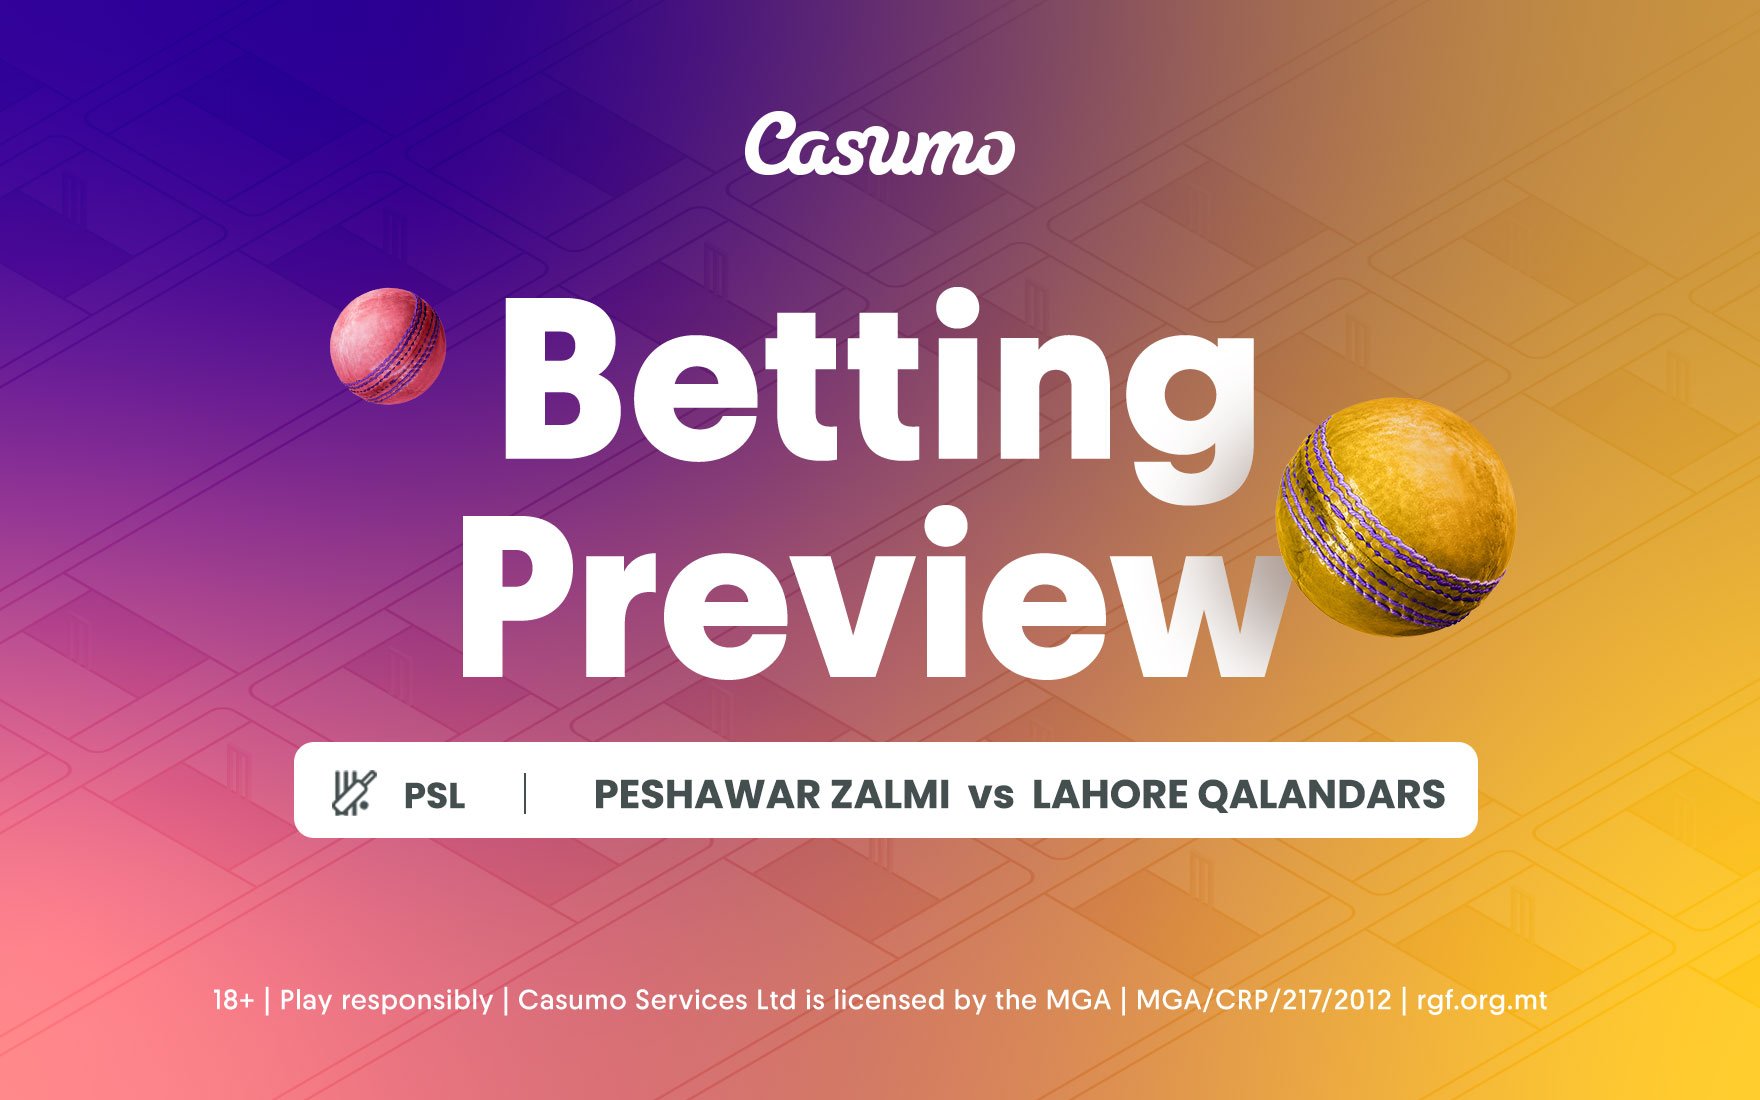 Peshawar Zalmi vs Lahore Qalandars betting tips